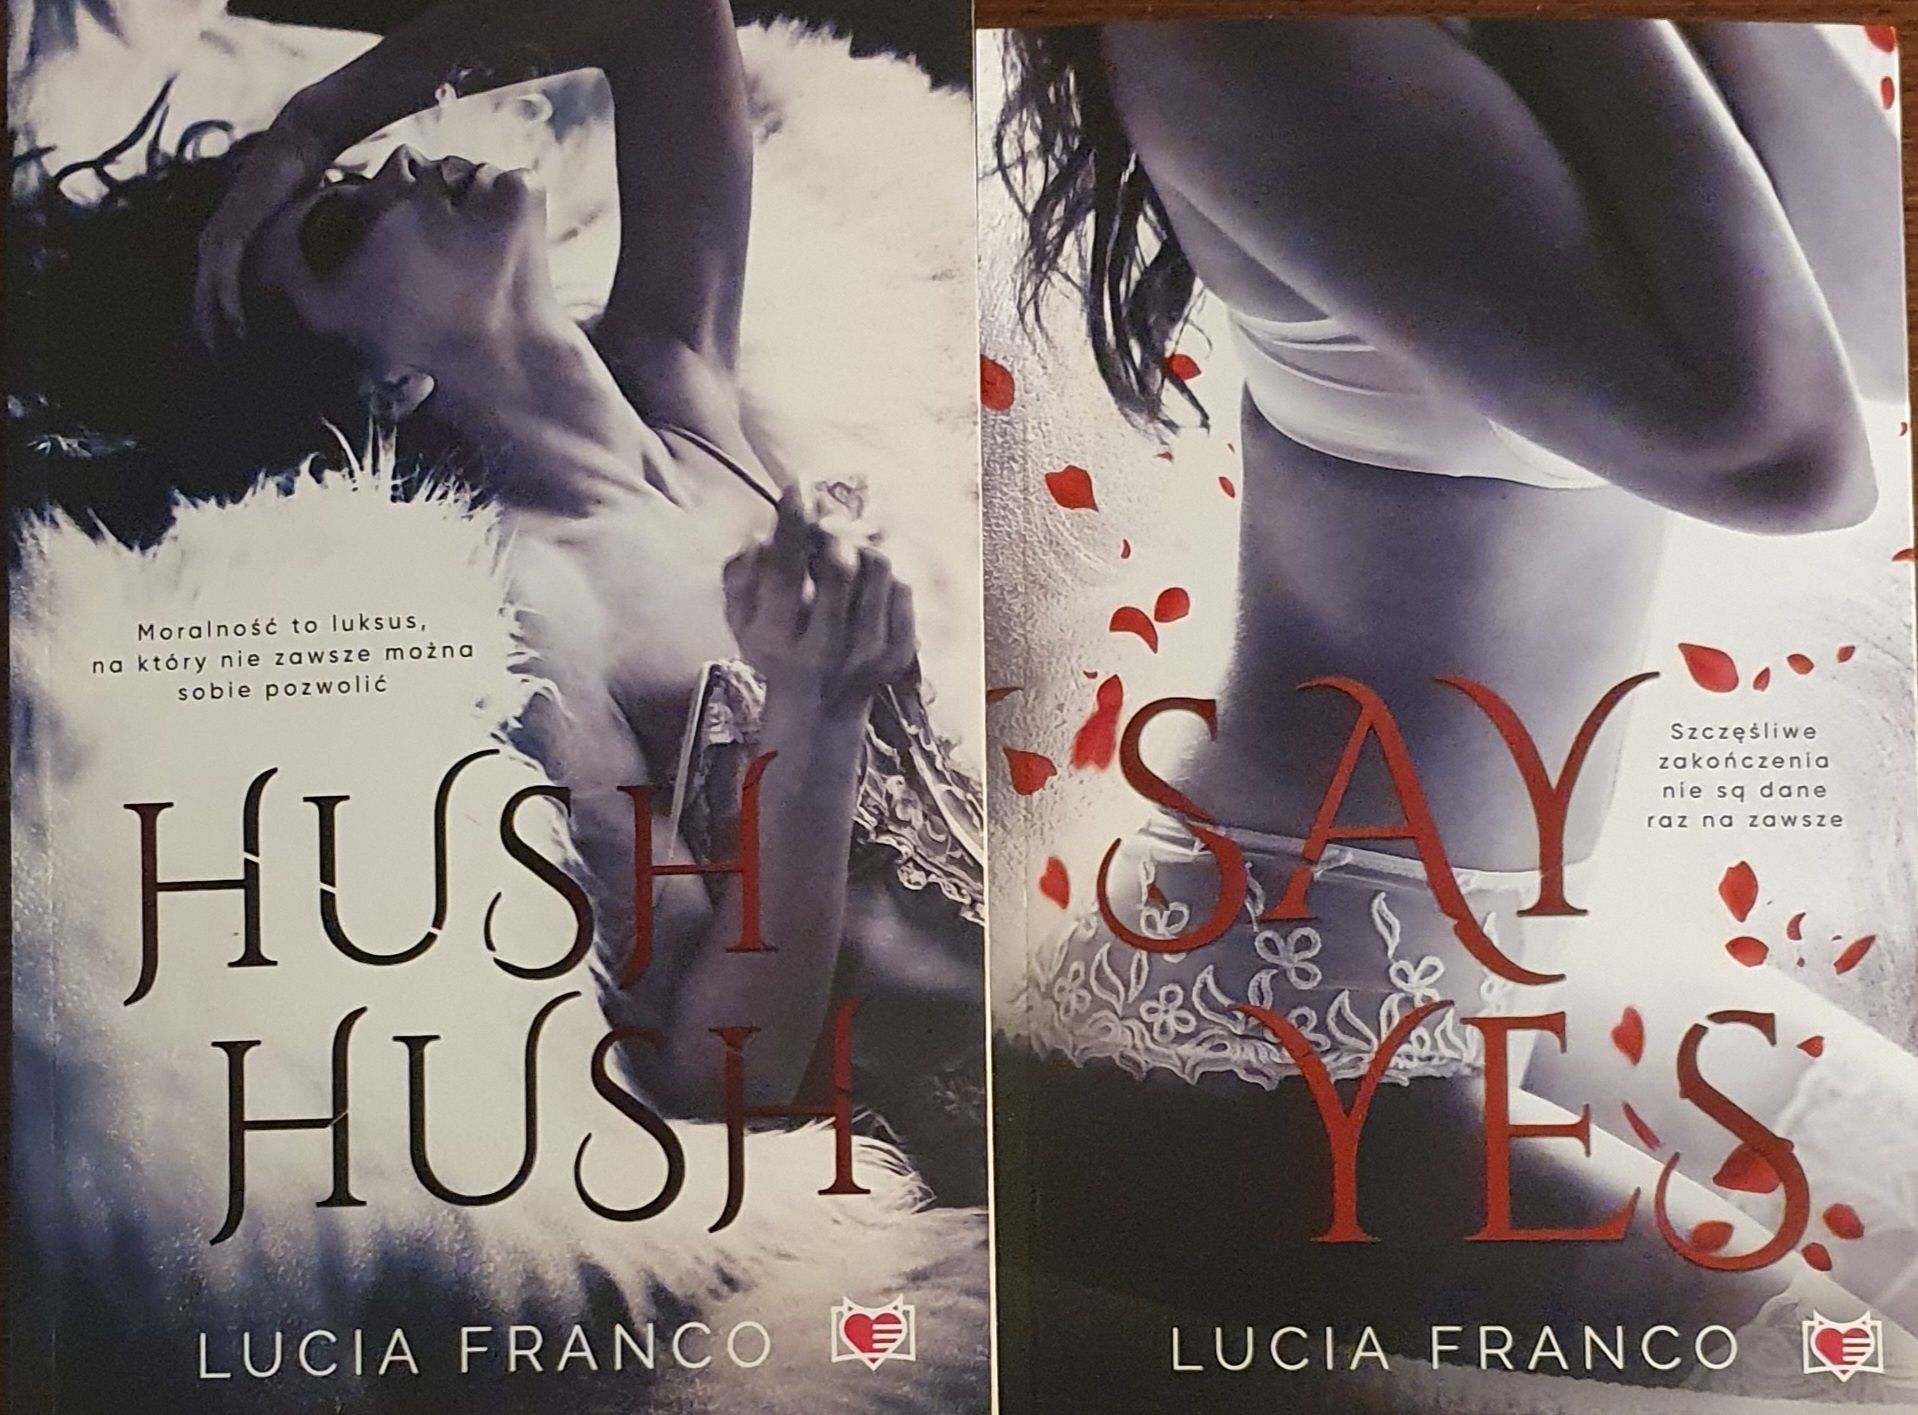 Lucia Franco Hush hush, Say yes